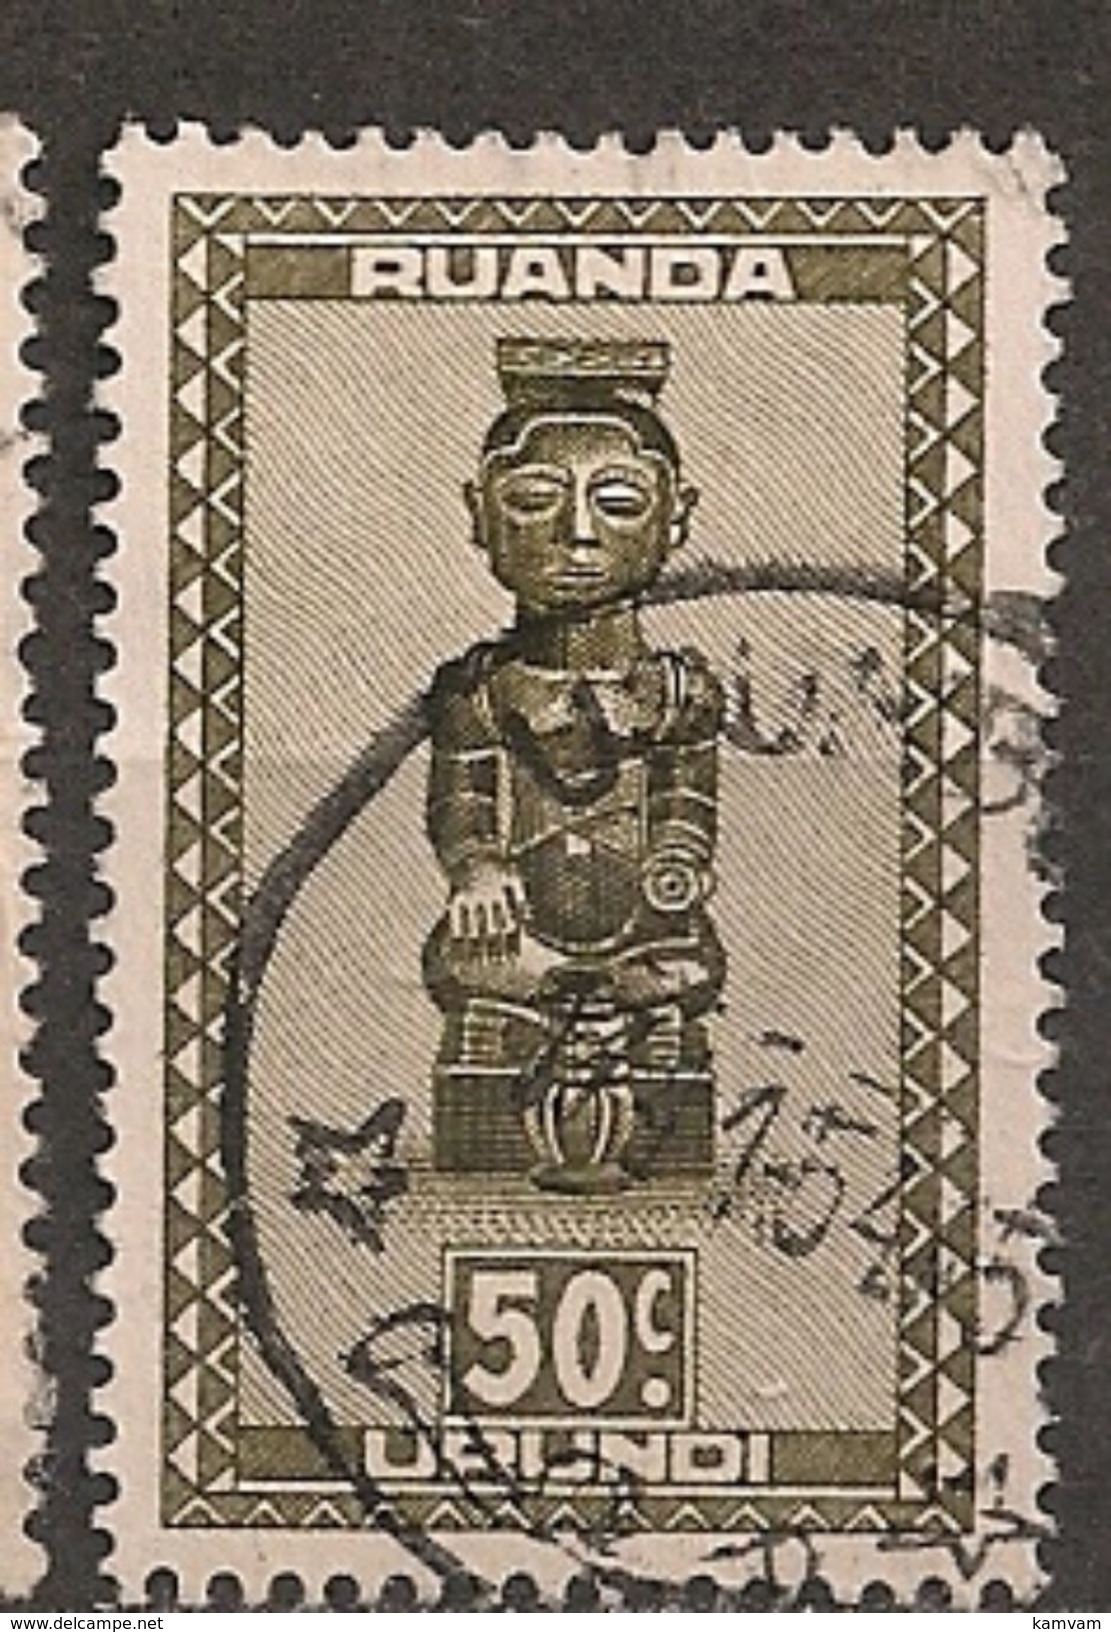 CONGO RUANDA URUNDI 159 USUMBURA - Gebraucht